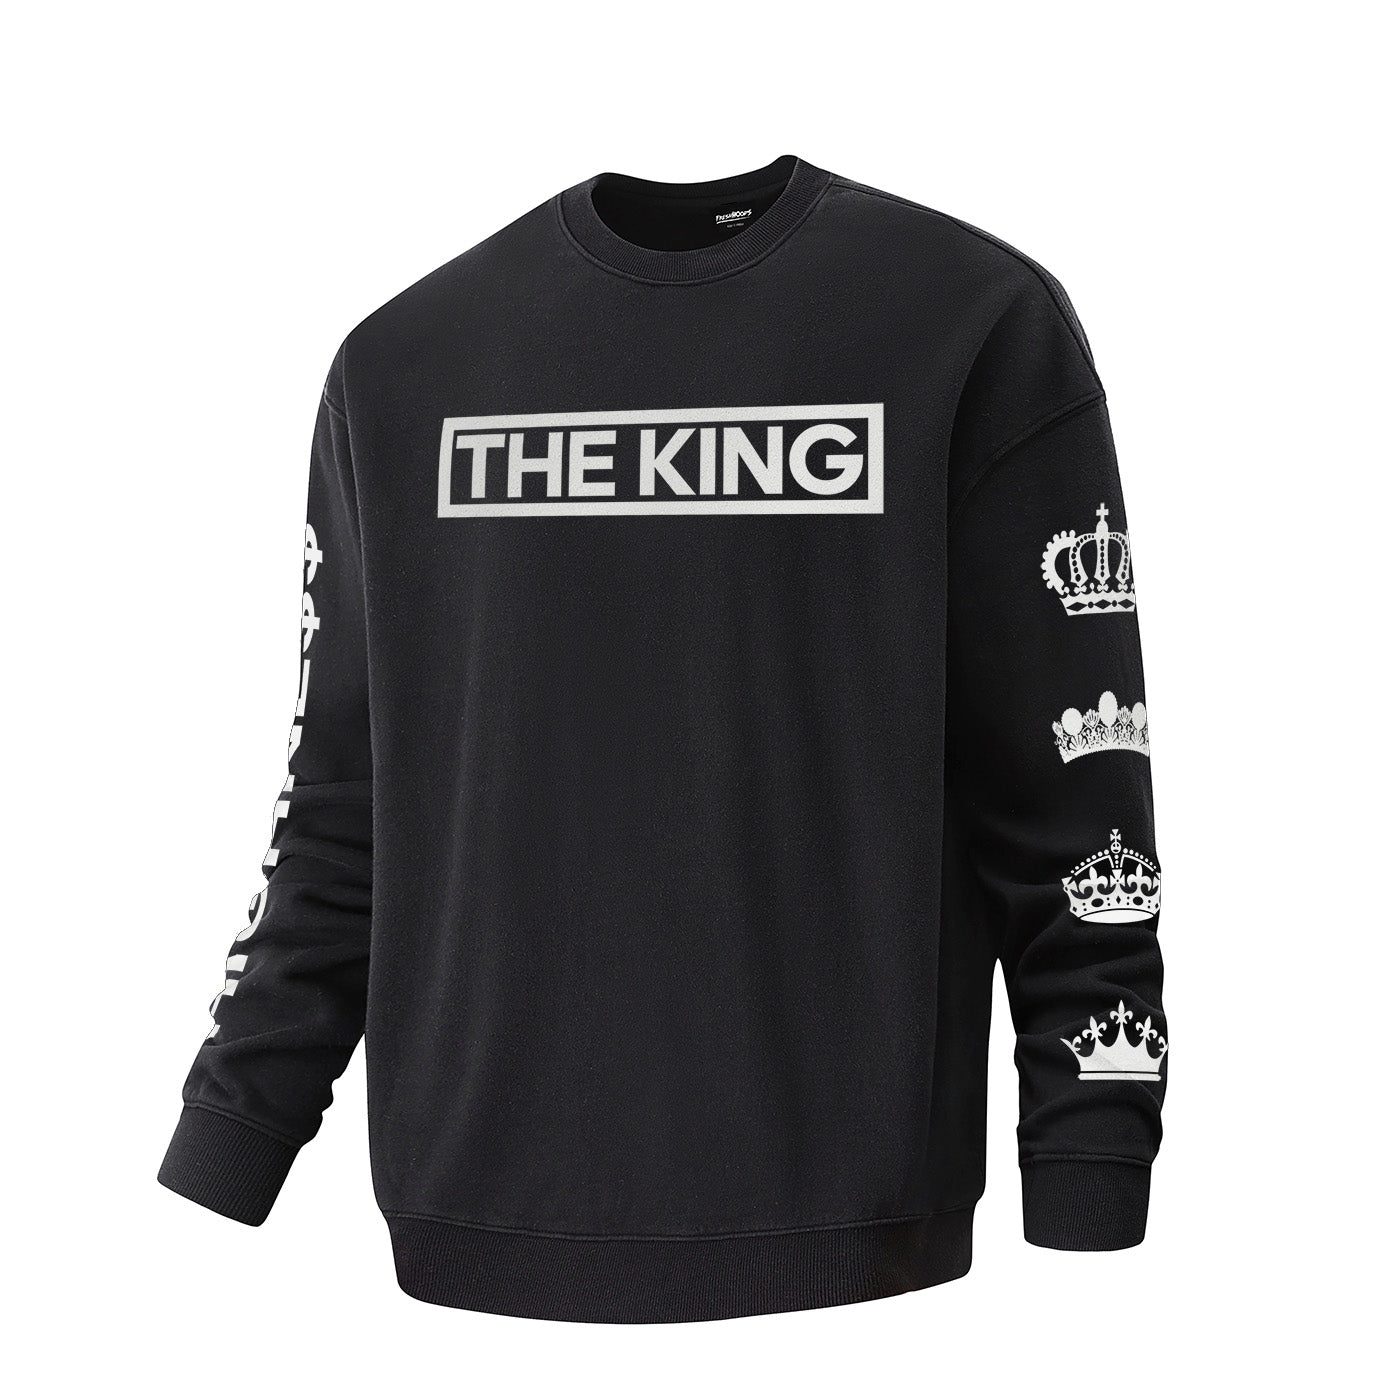 The King Oversized Sweatshirt